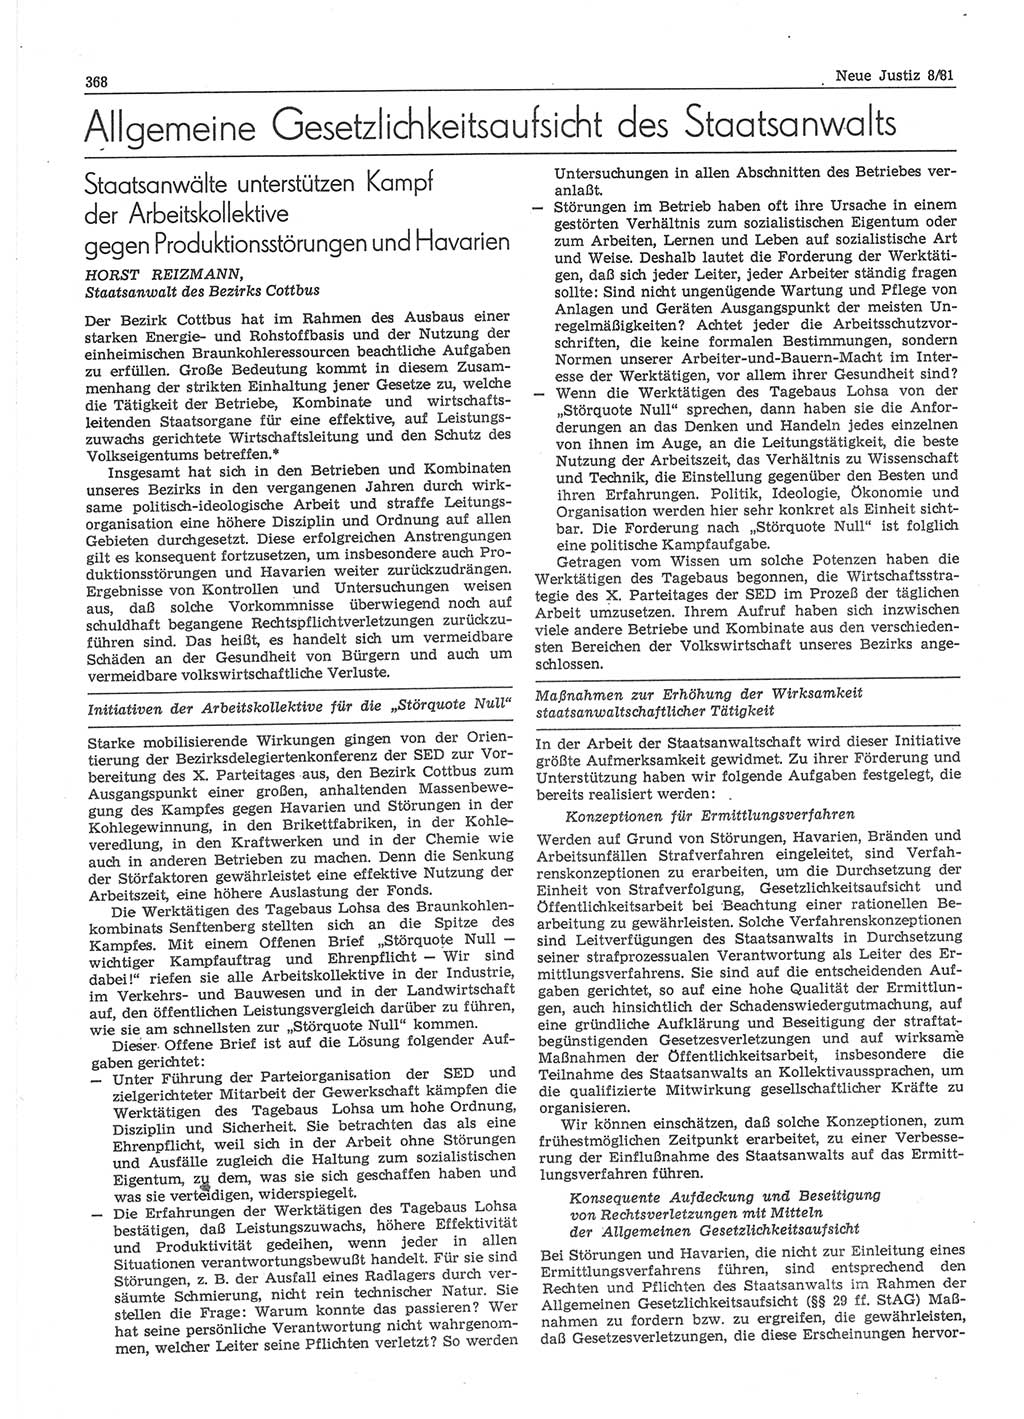 Neue Justiz (NJ), Zeitschrift für sozialistisches Recht und Gesetzlichkeit [Deutsche Demokratische Republik (DDR)], 35. Jahrgang 1981, Seite 368 (NJ DDR 1981, S. 368)